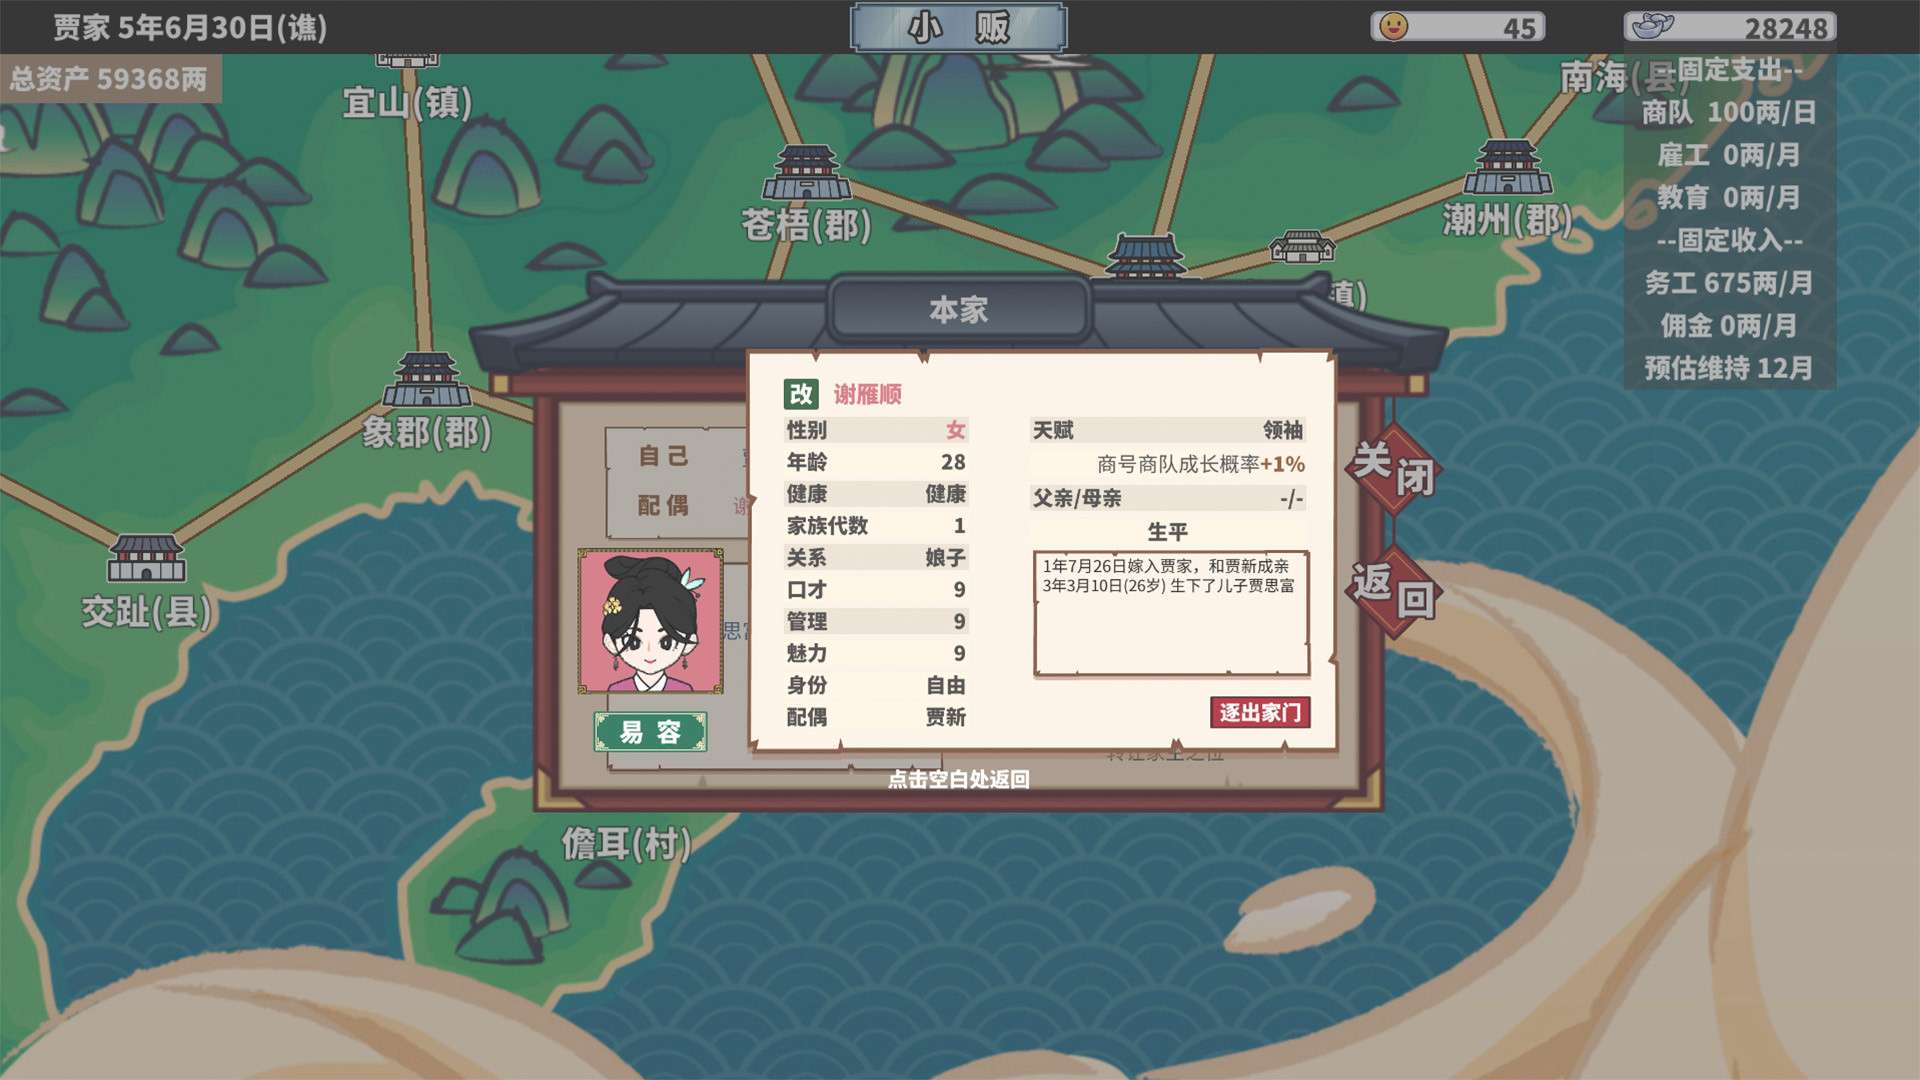 中华一商 v1.1.2p2 中文绿色版解压即玩休闲, 模拟游戏